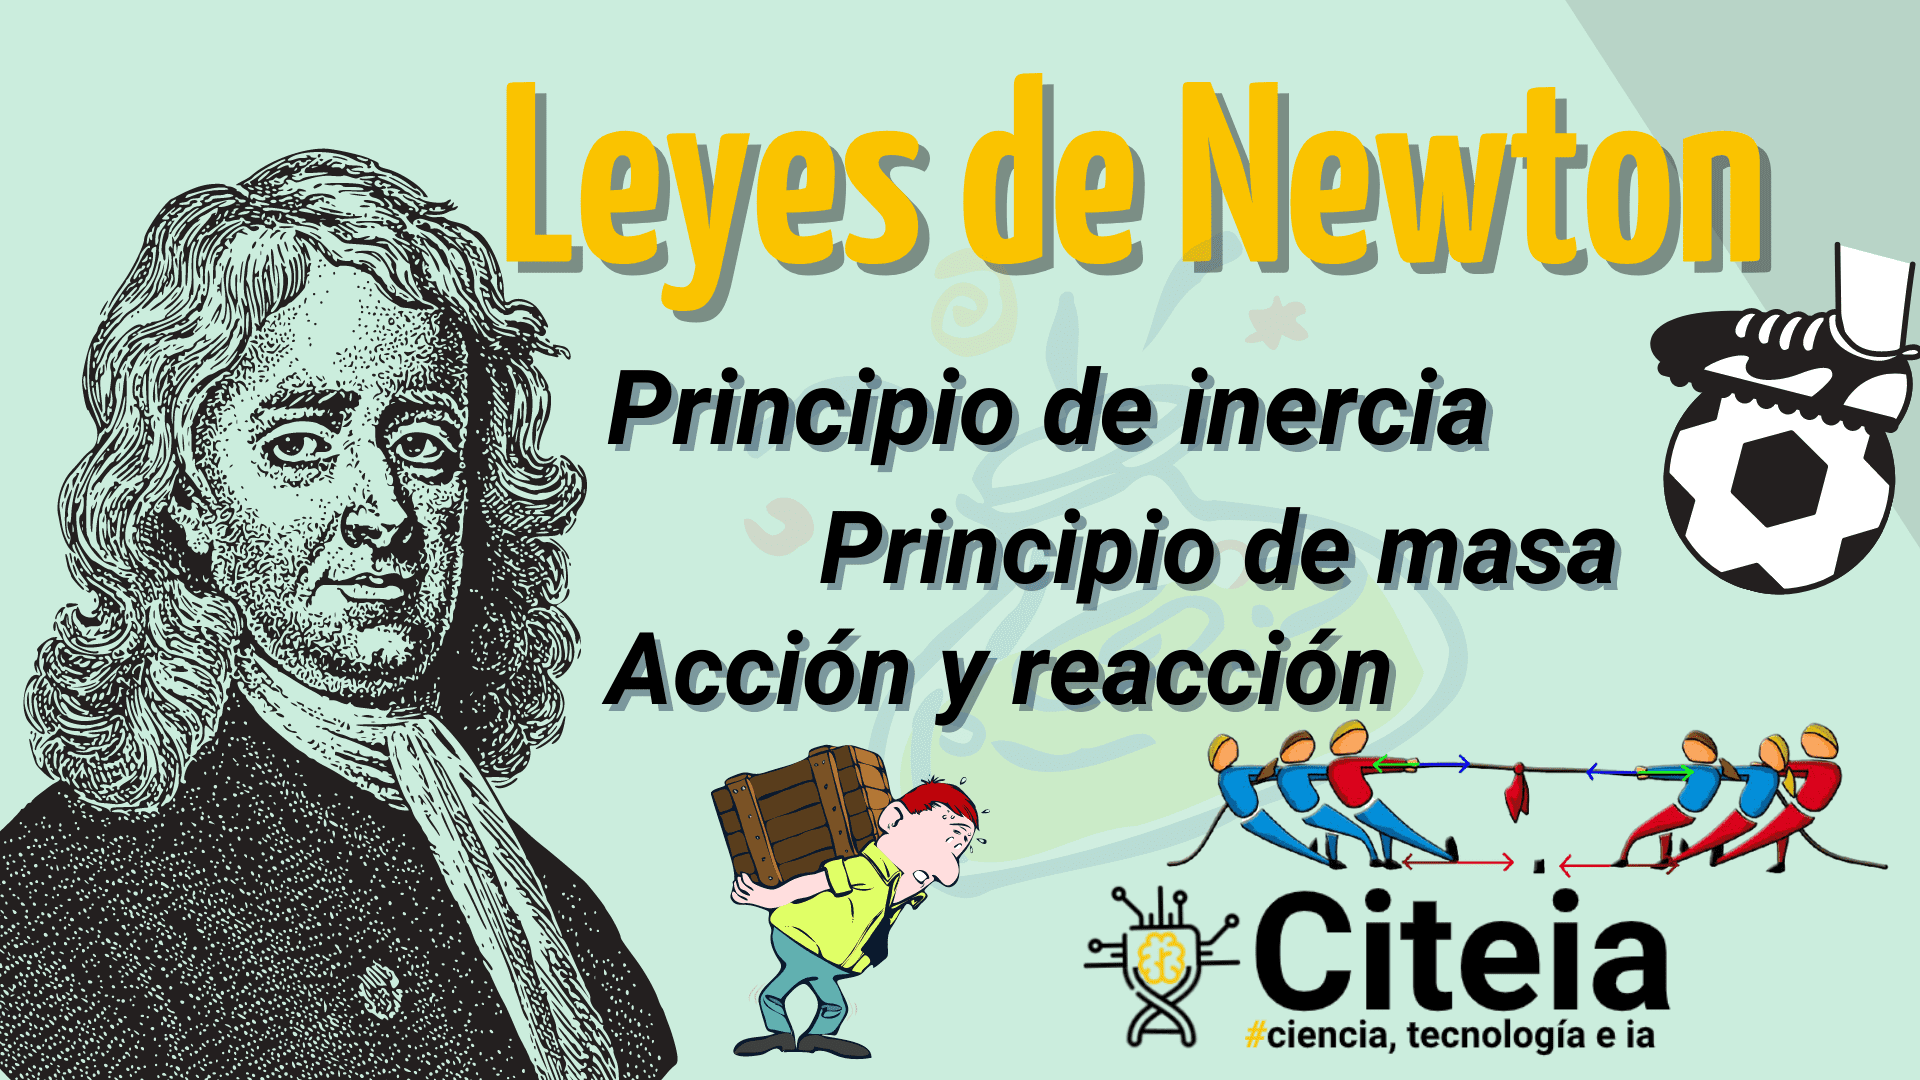 Leyes de Newton 